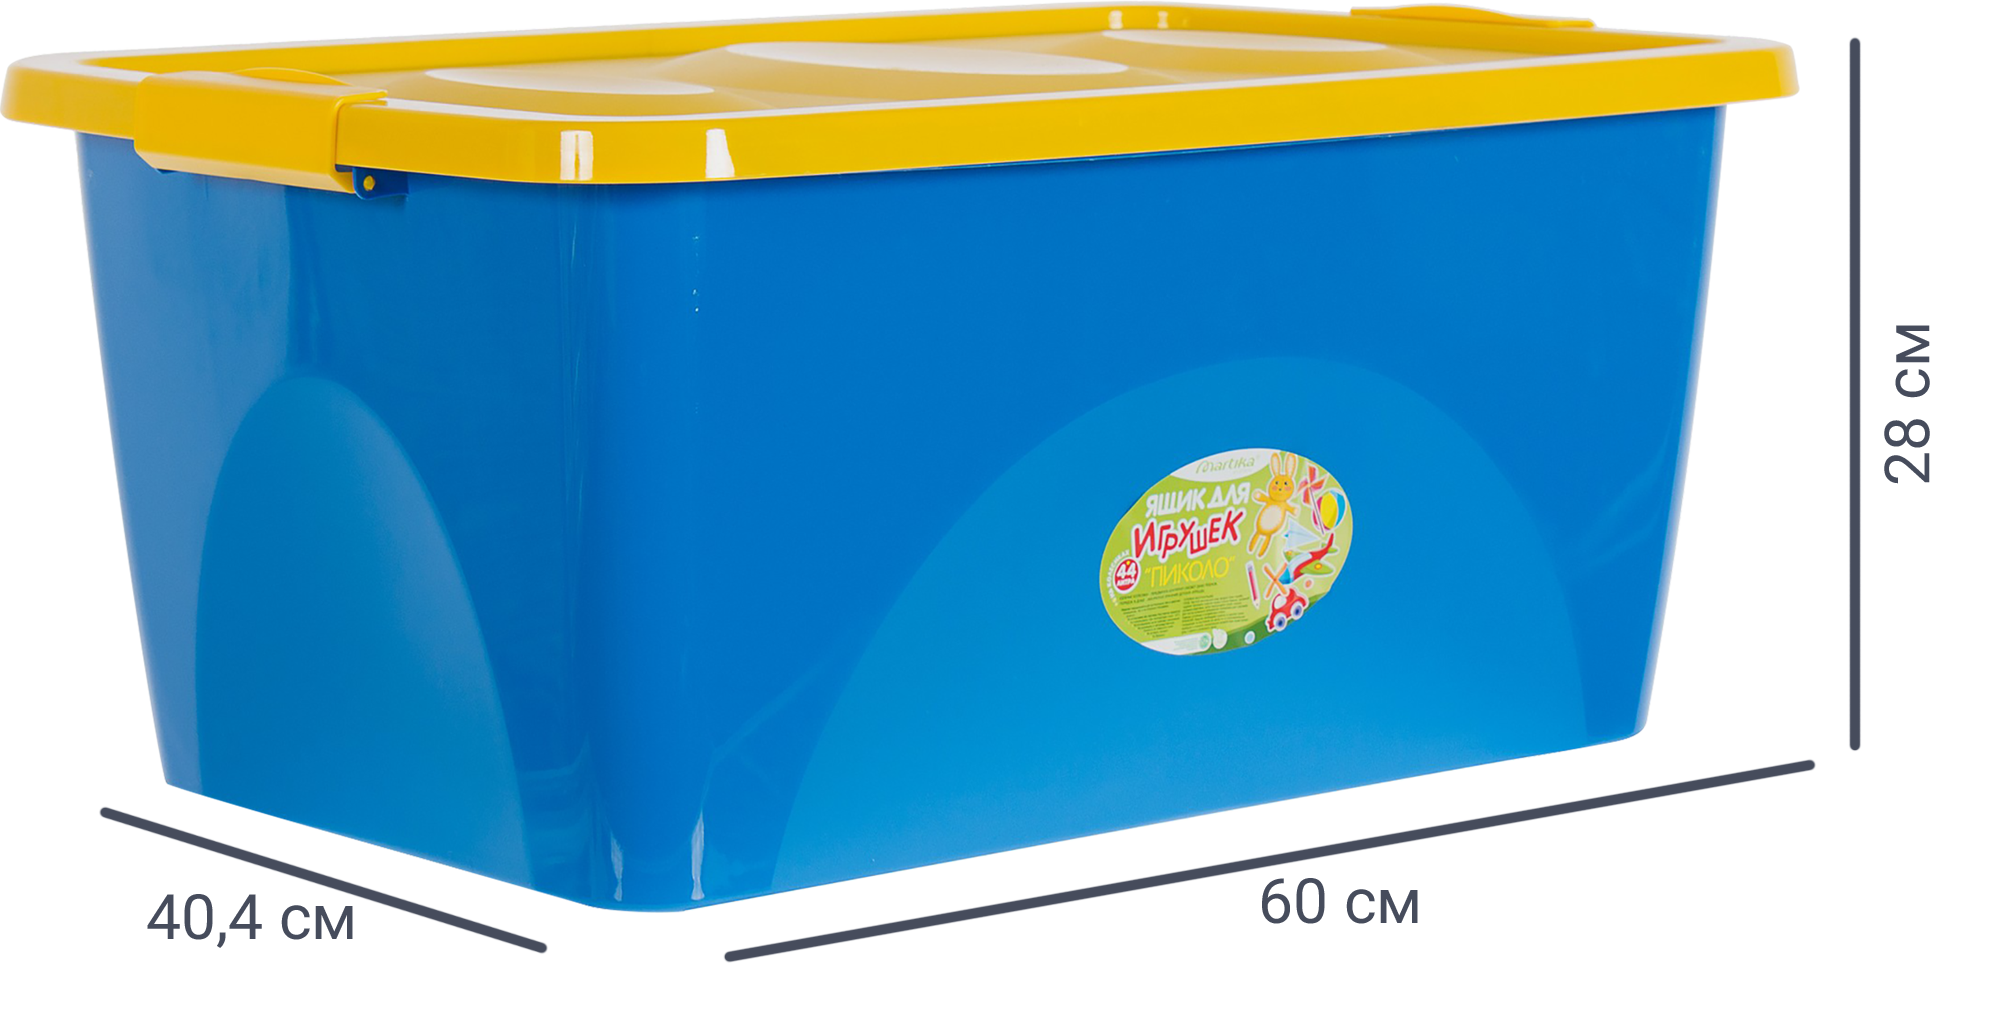 18645552 Ящик для игрушек на колесах 60x40.4x28 см 44 л пластик с крышкой цвет сине-жёлтый STLM-0011858 MARTIKA